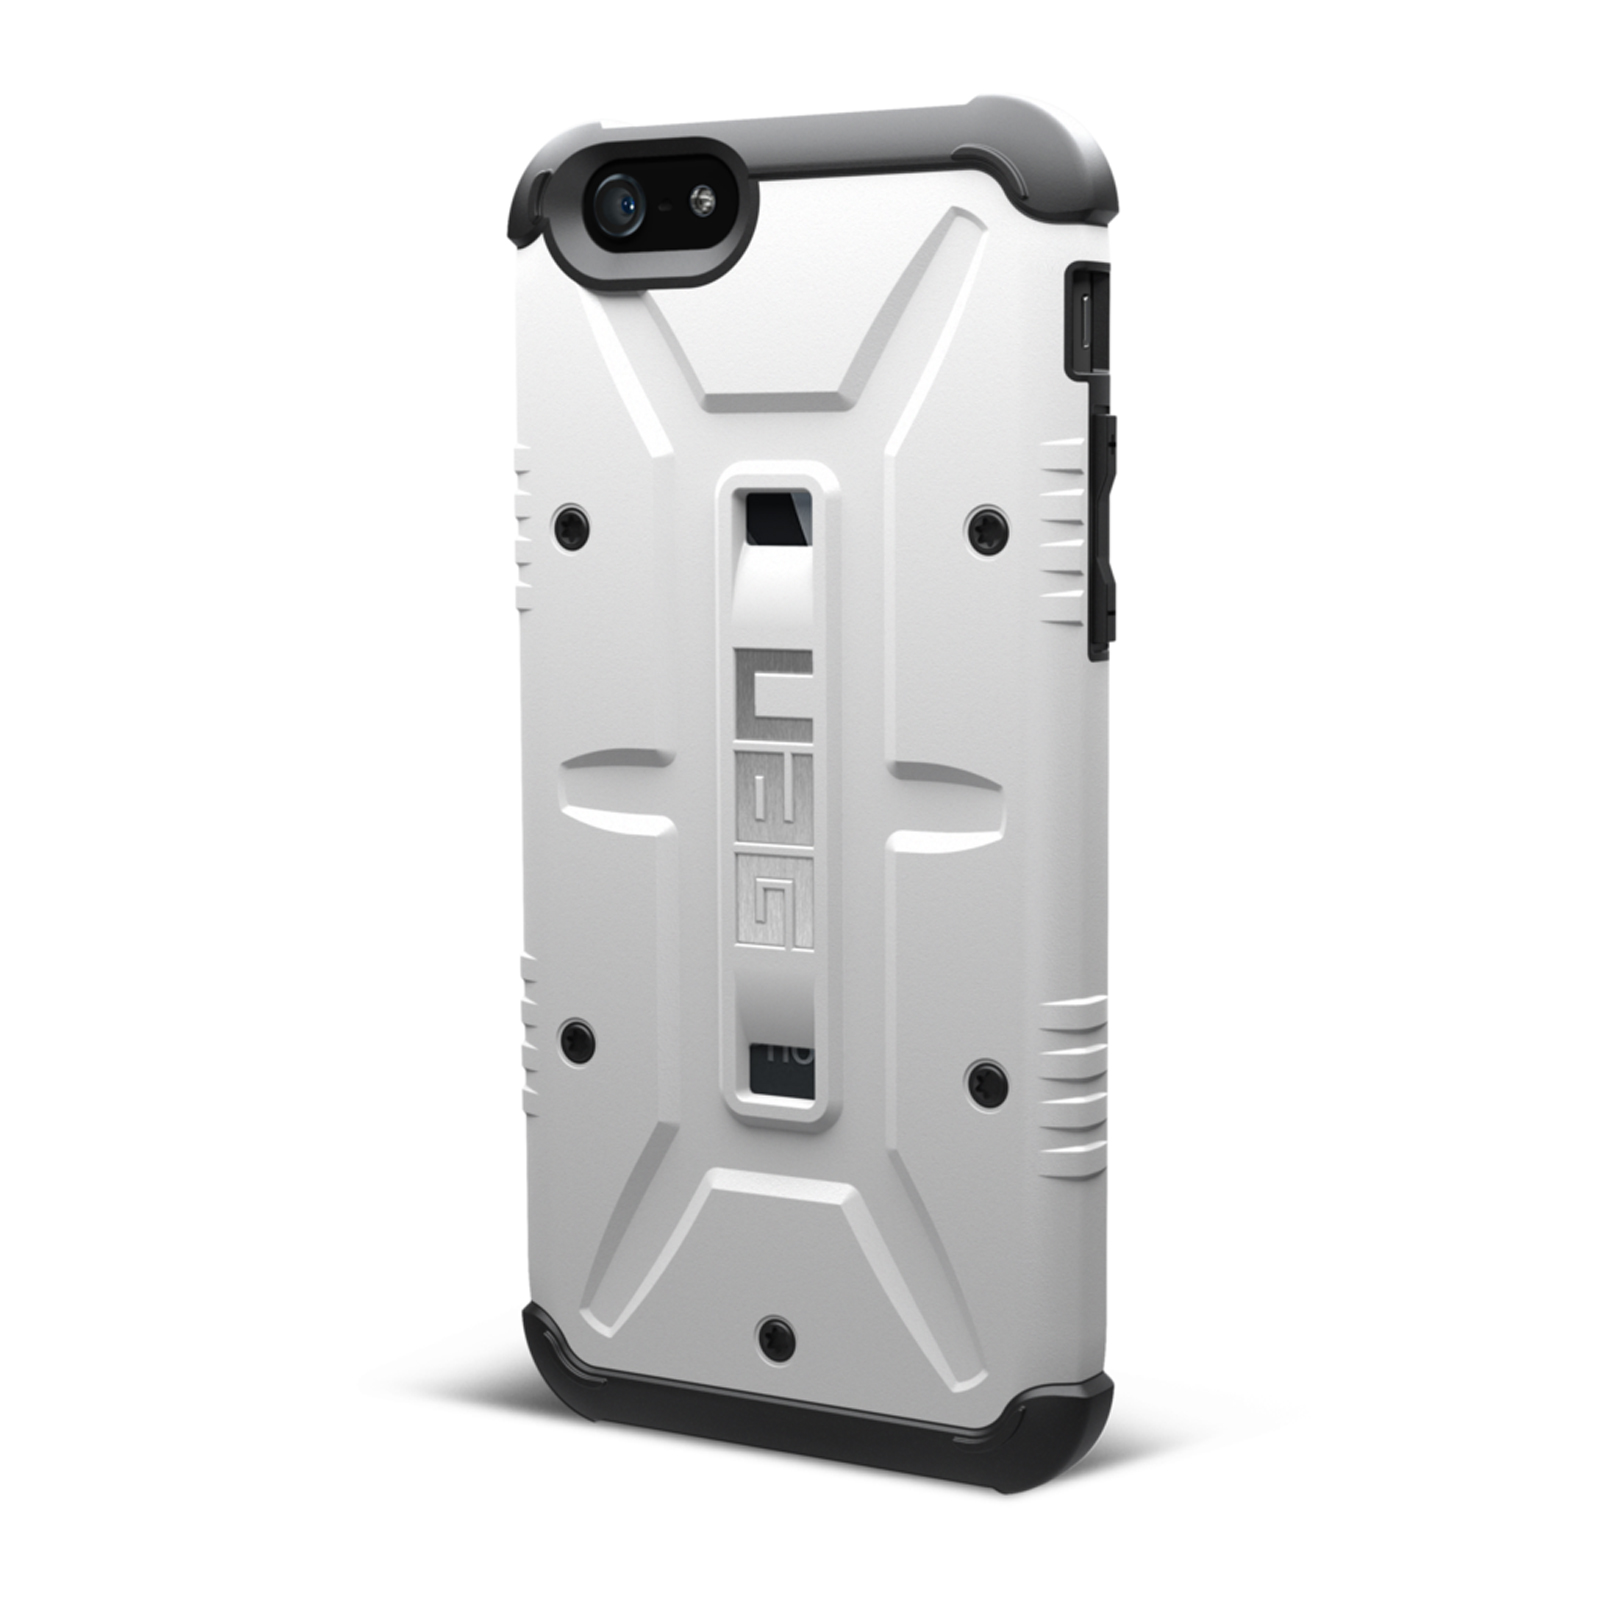 UAG iPhone 6 Plus and 6s Plus Composite Case - Navigator - White/Black